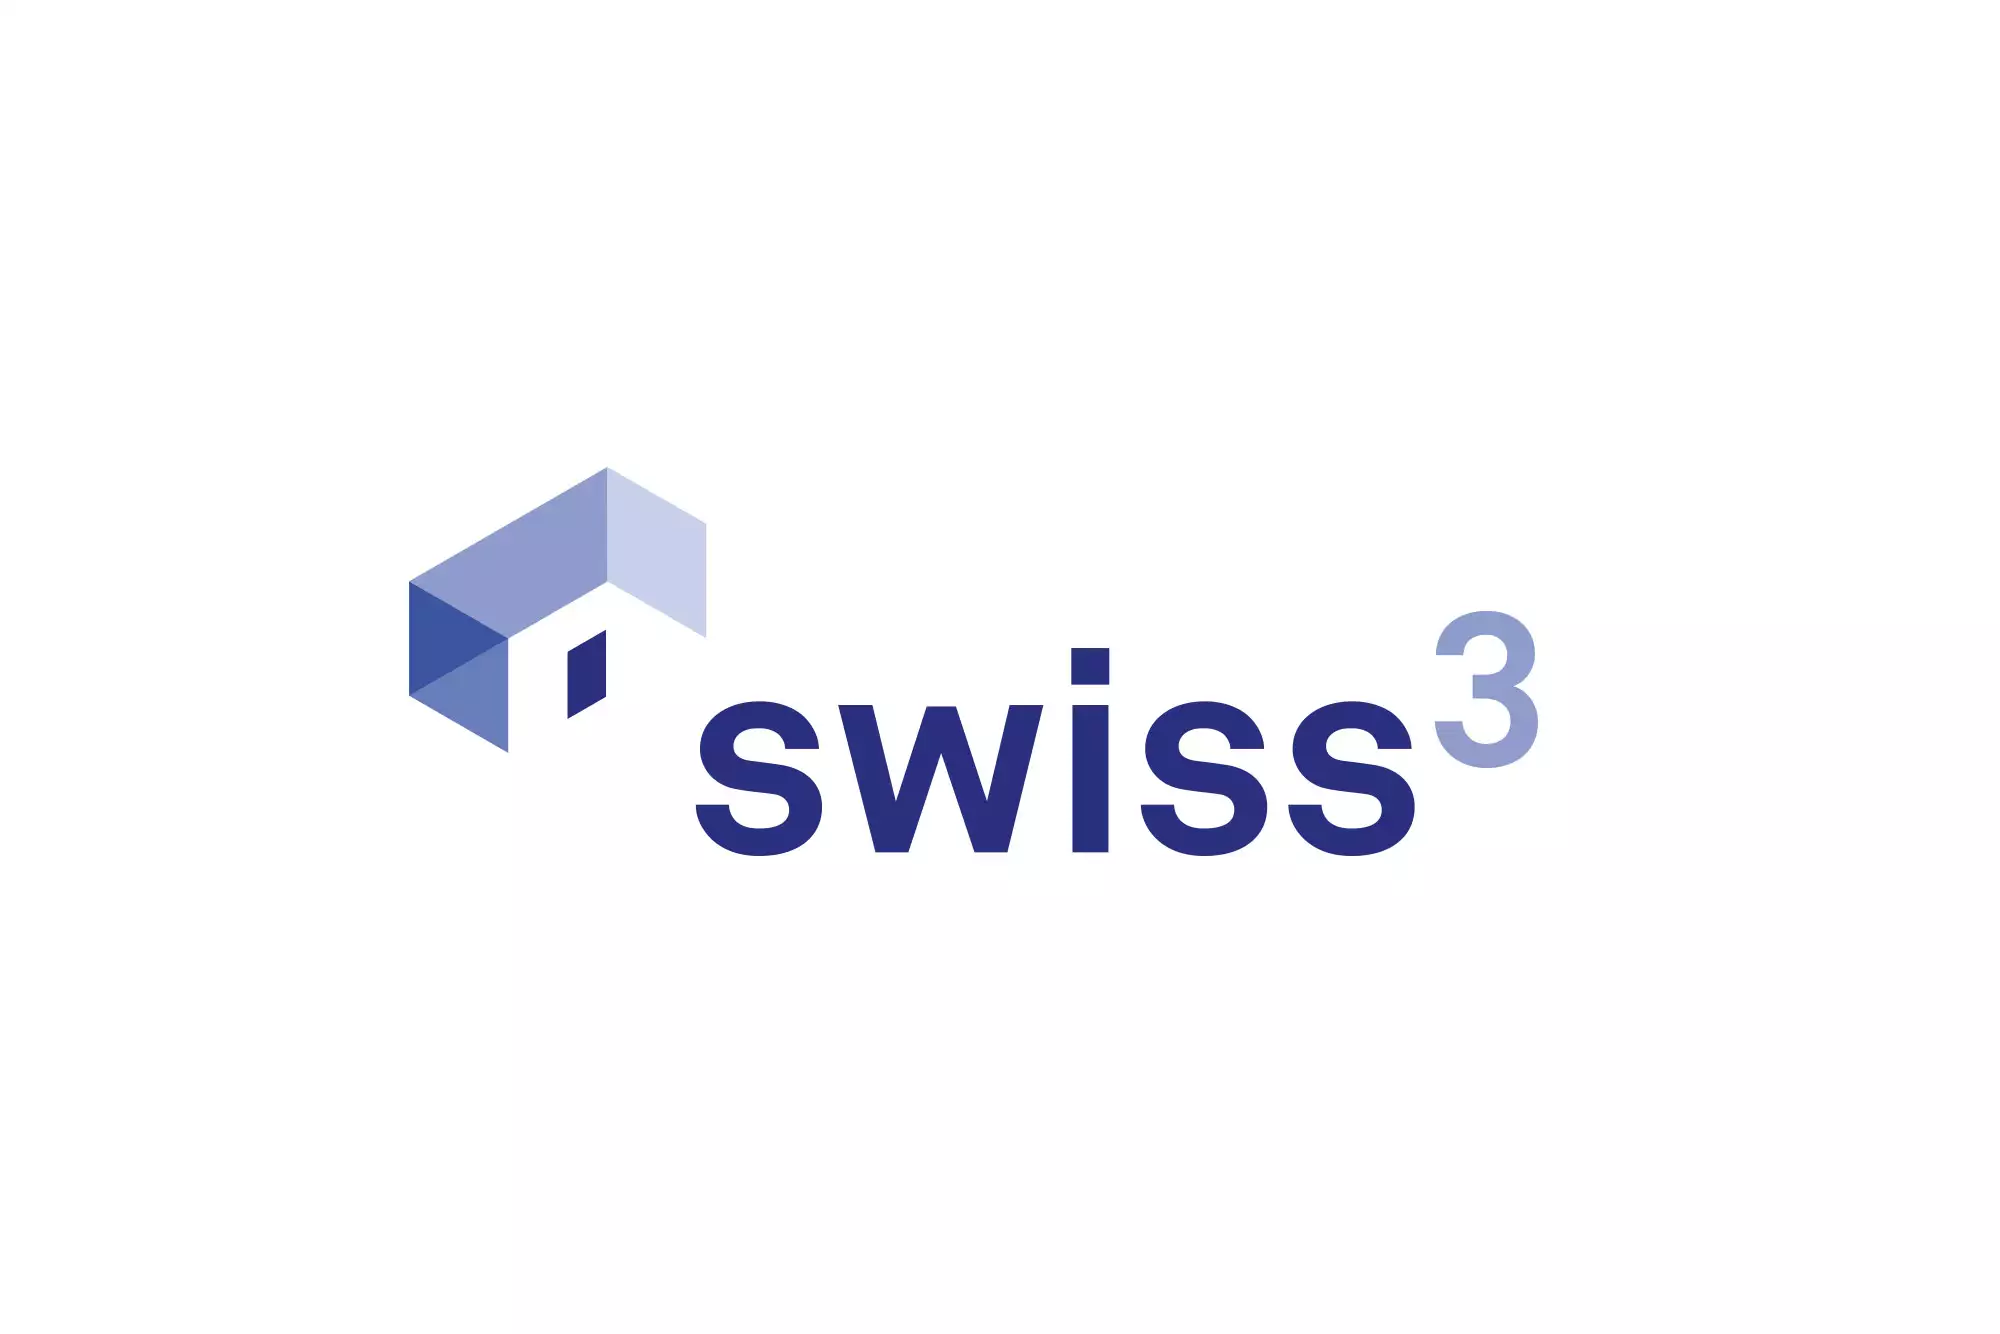 JSA_swiss3_logo